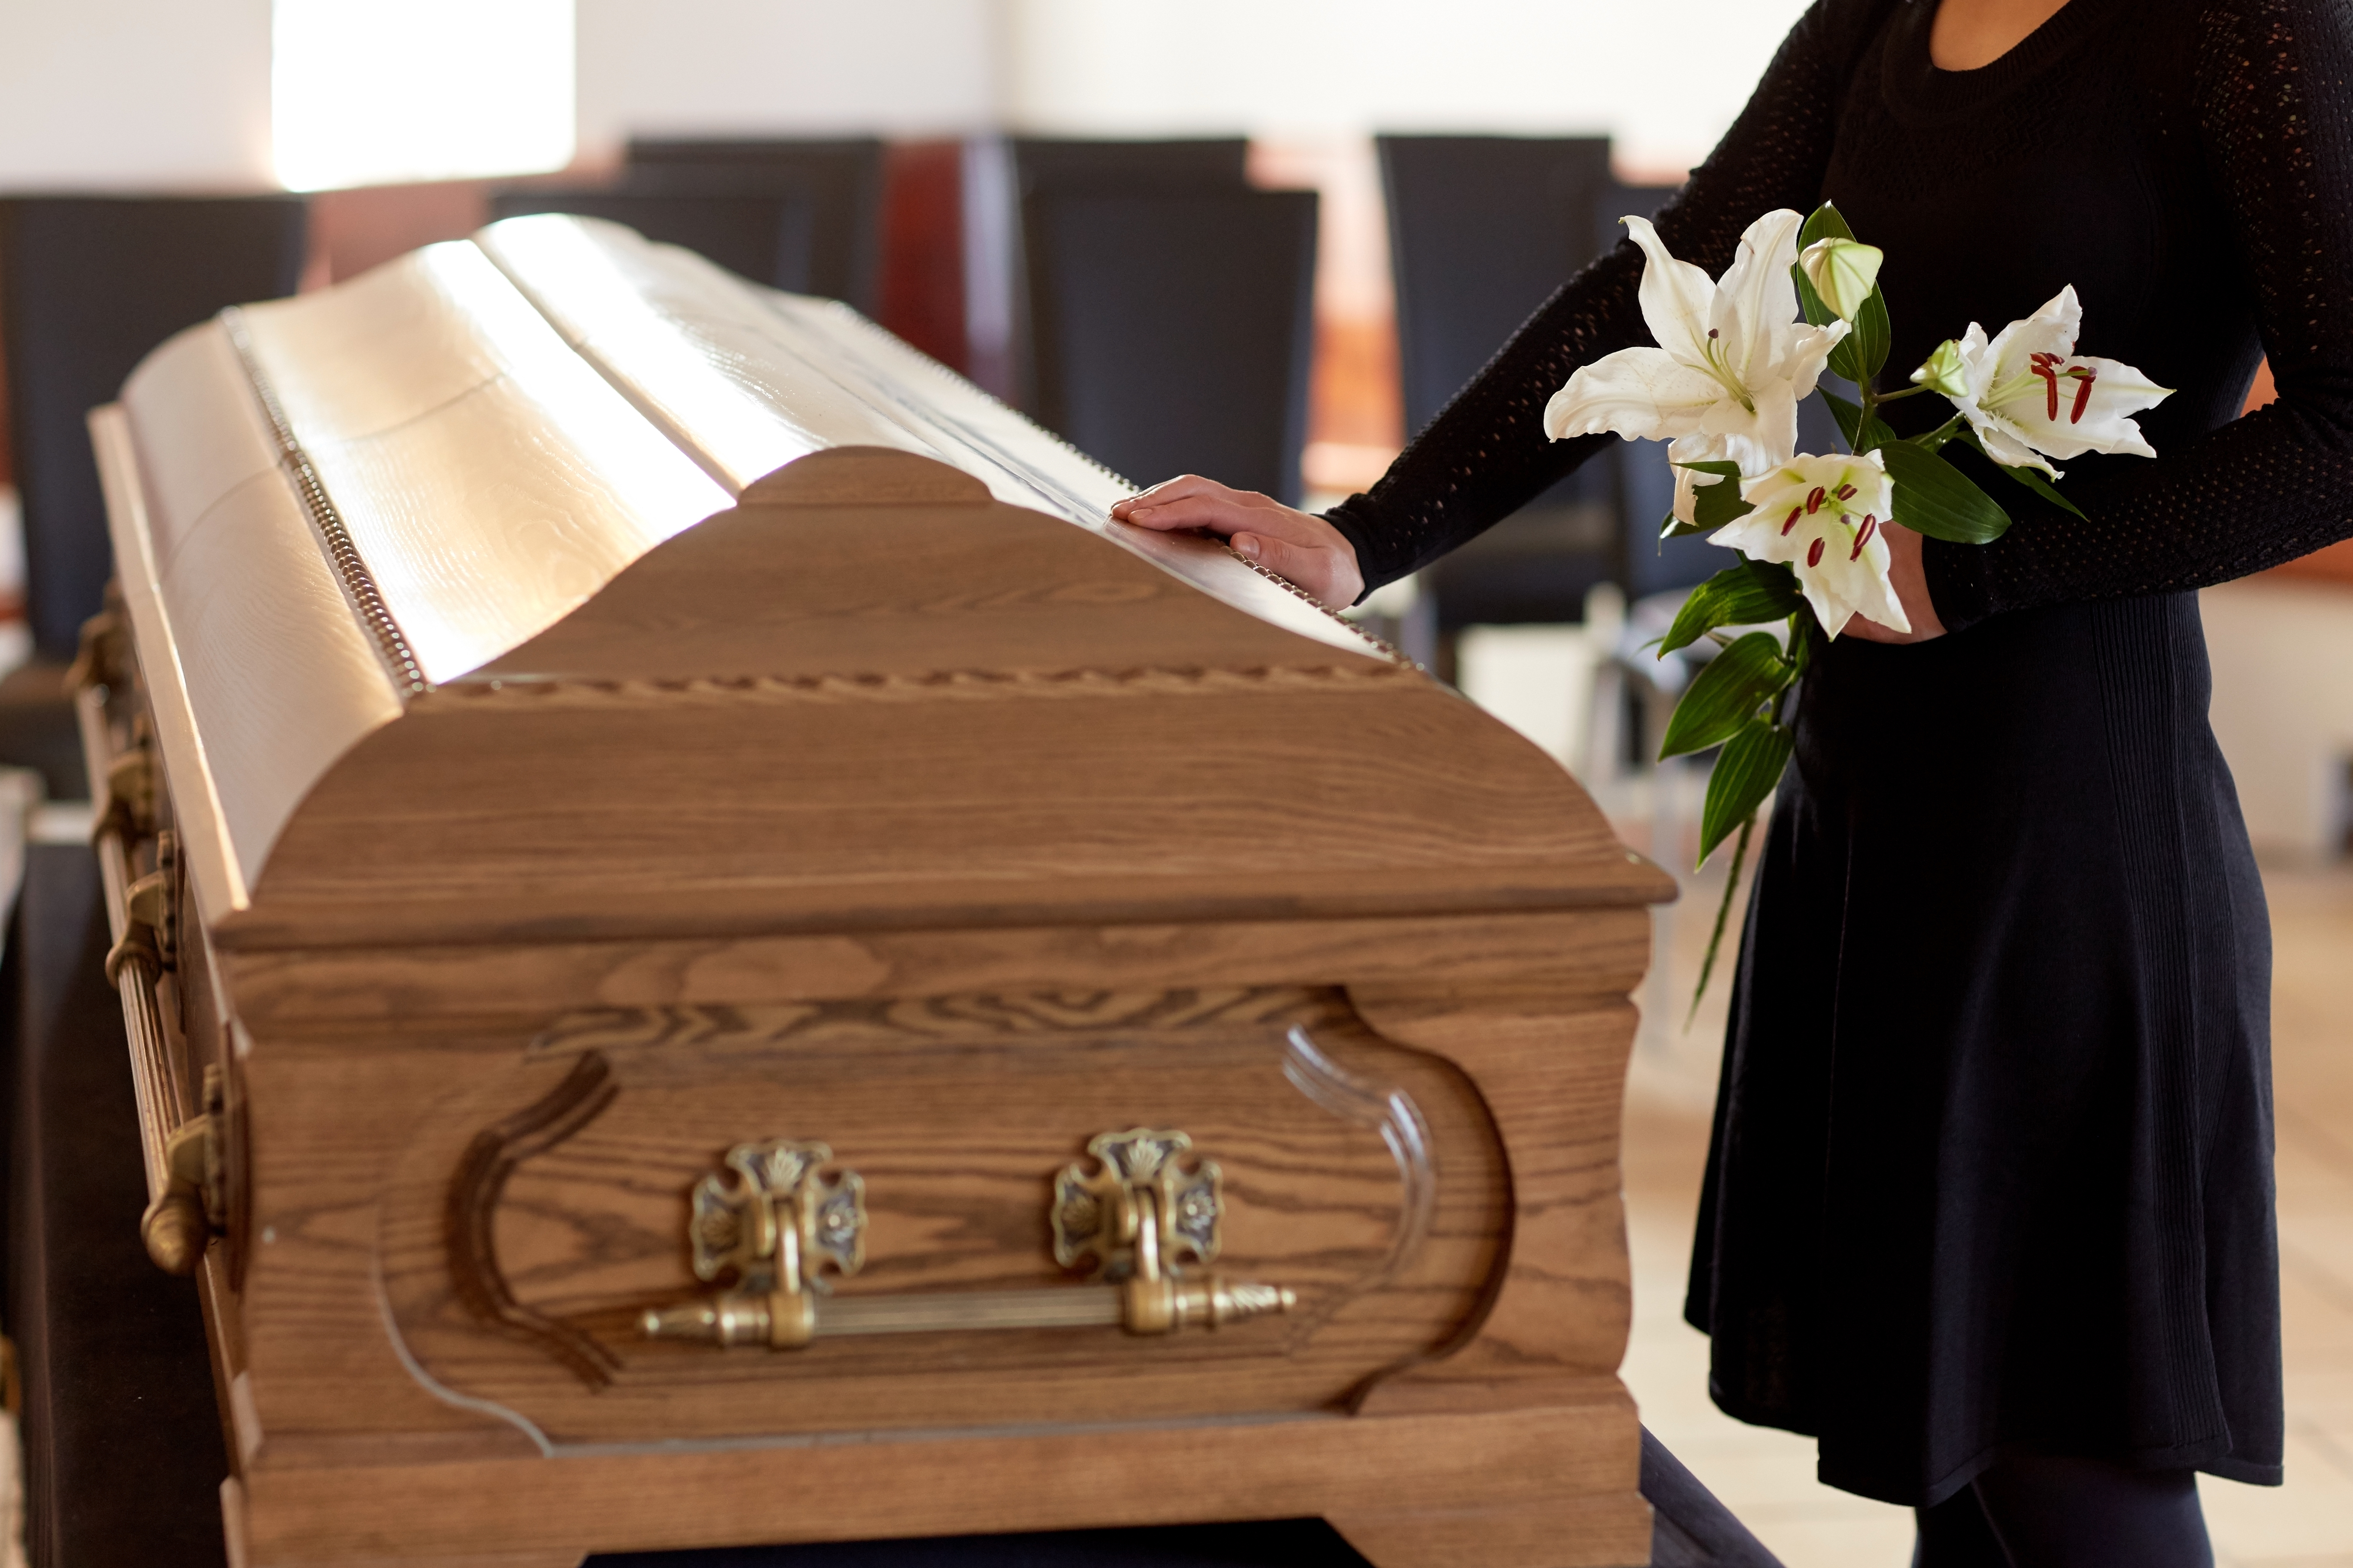 A woman standing beside a coffin | Source: Shutterstock